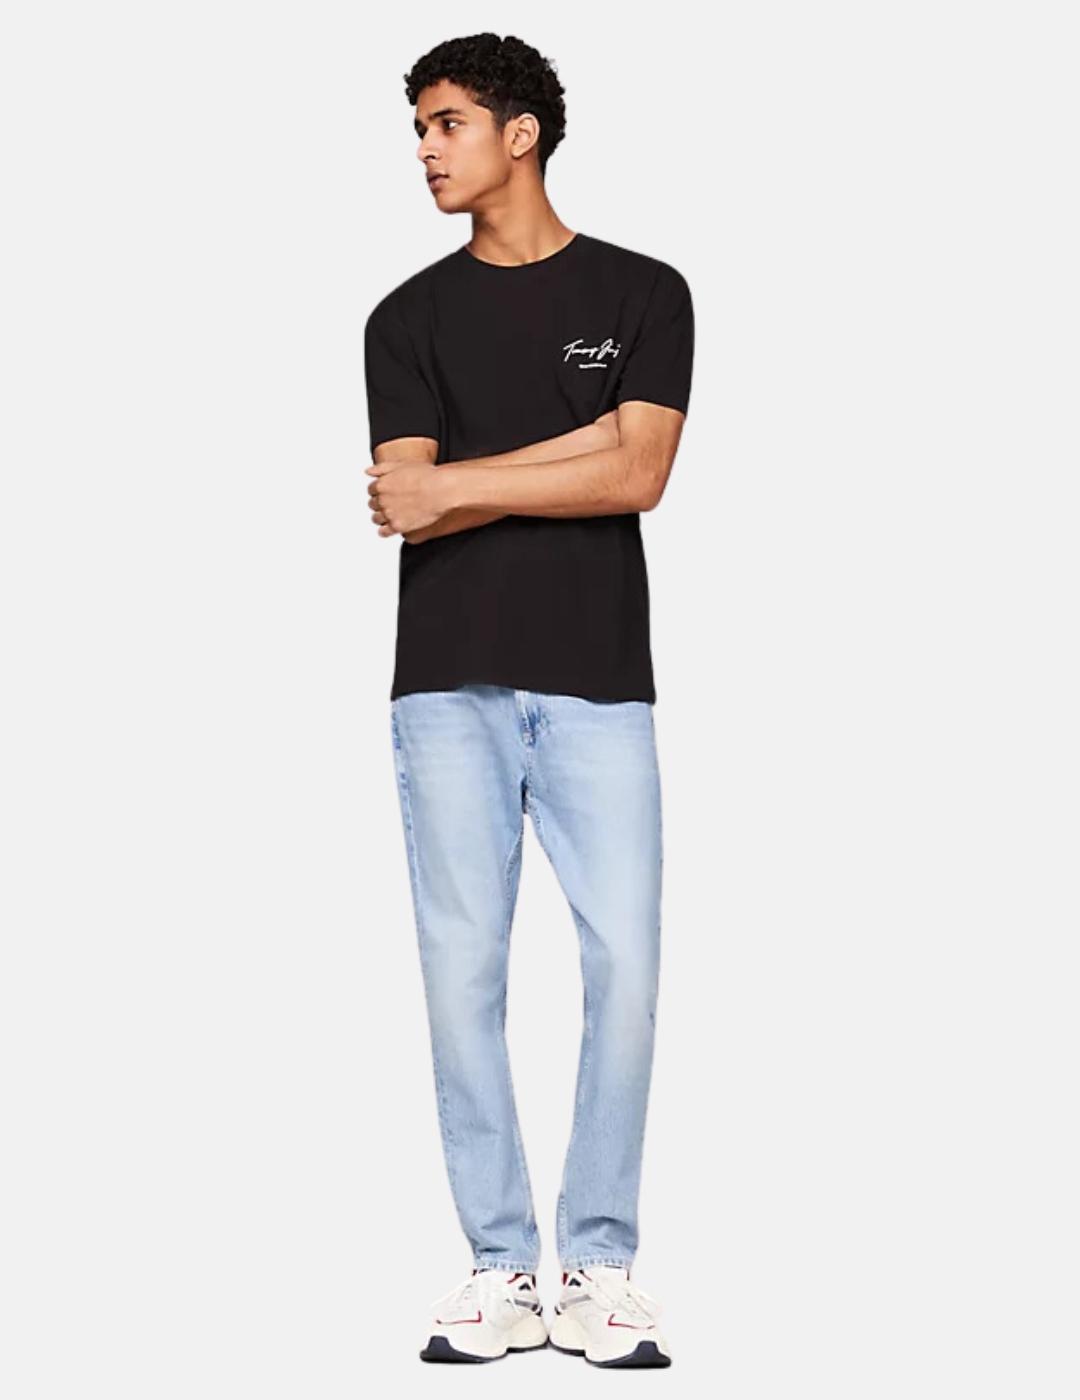 Camiseta Tommy Jeans hombre negra loco fino en blanco